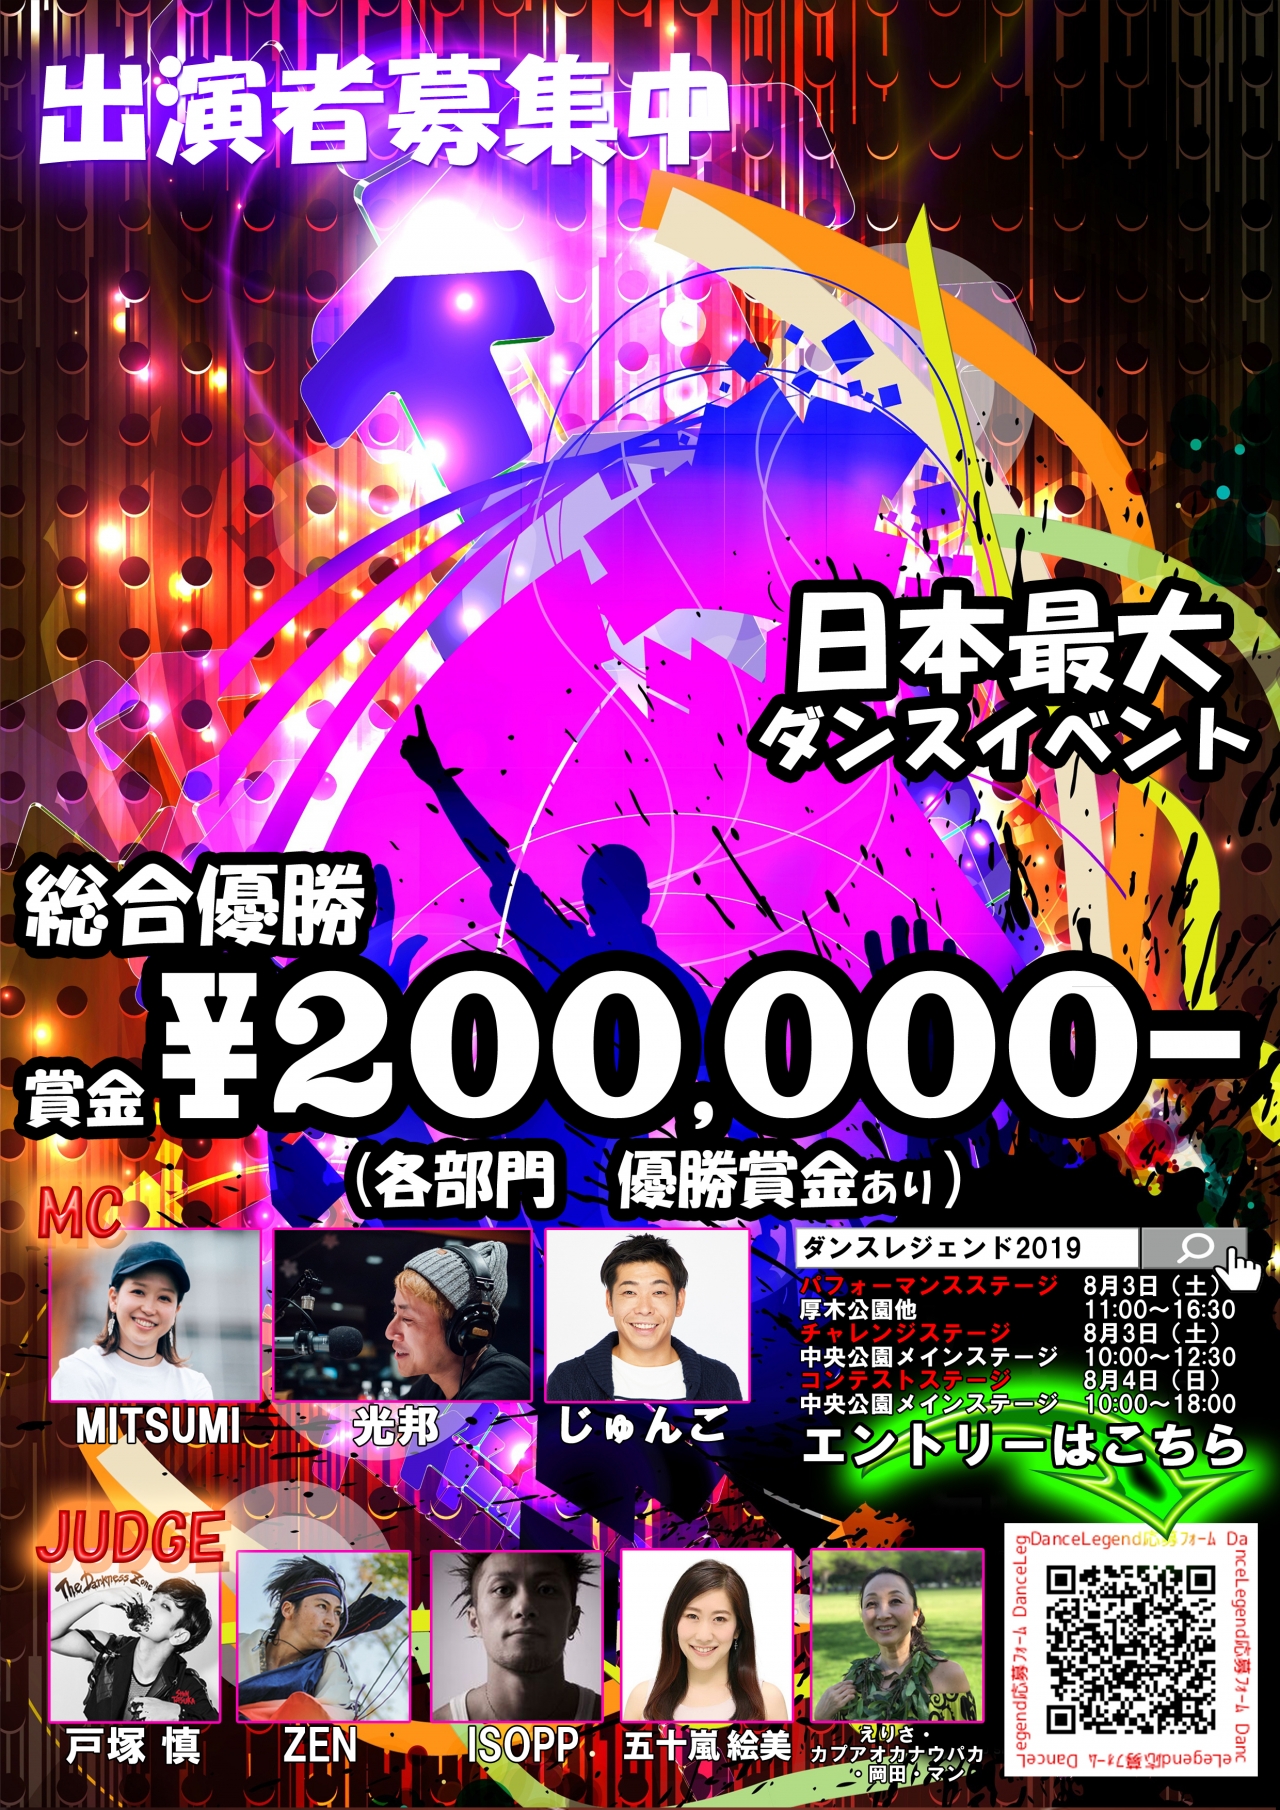 総合優勝賞金￥200,000-！DanceLegend(ダンスレジェンド)コンテストステージエントリー締切迫る！